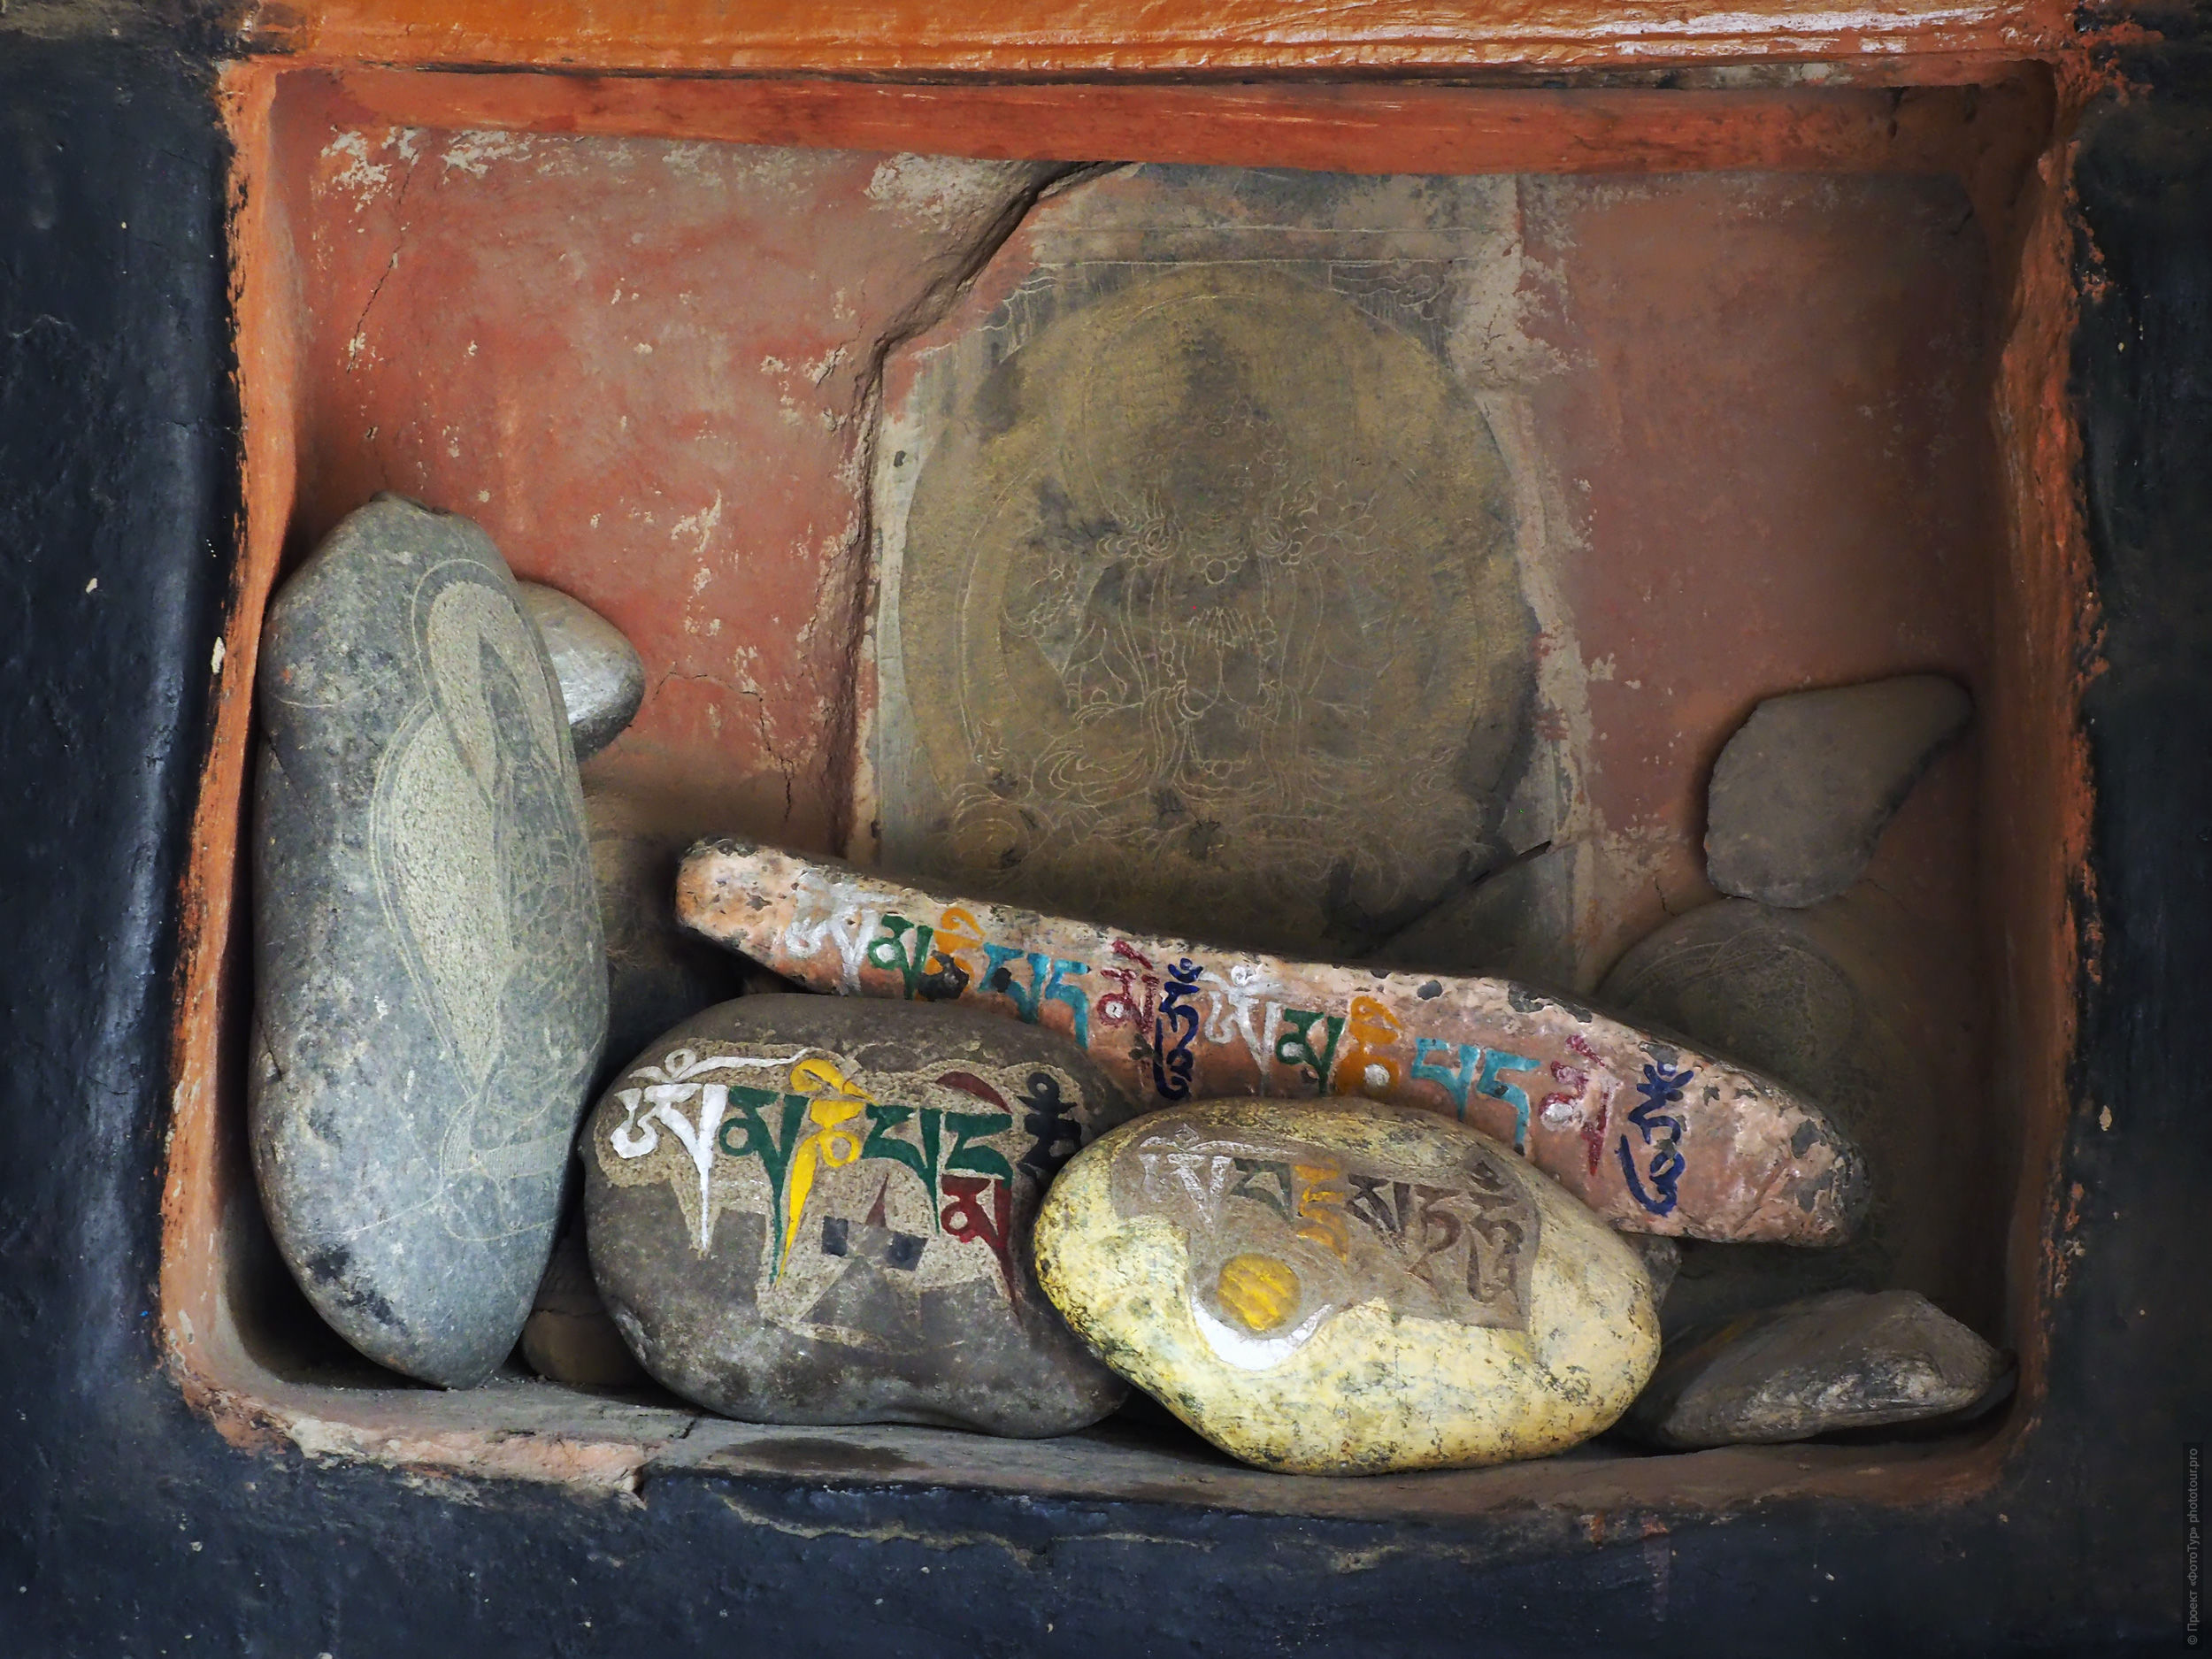 Камны с мантрами в буддийском монастыре Бардан, Занскар, округ Каргил, Индия.